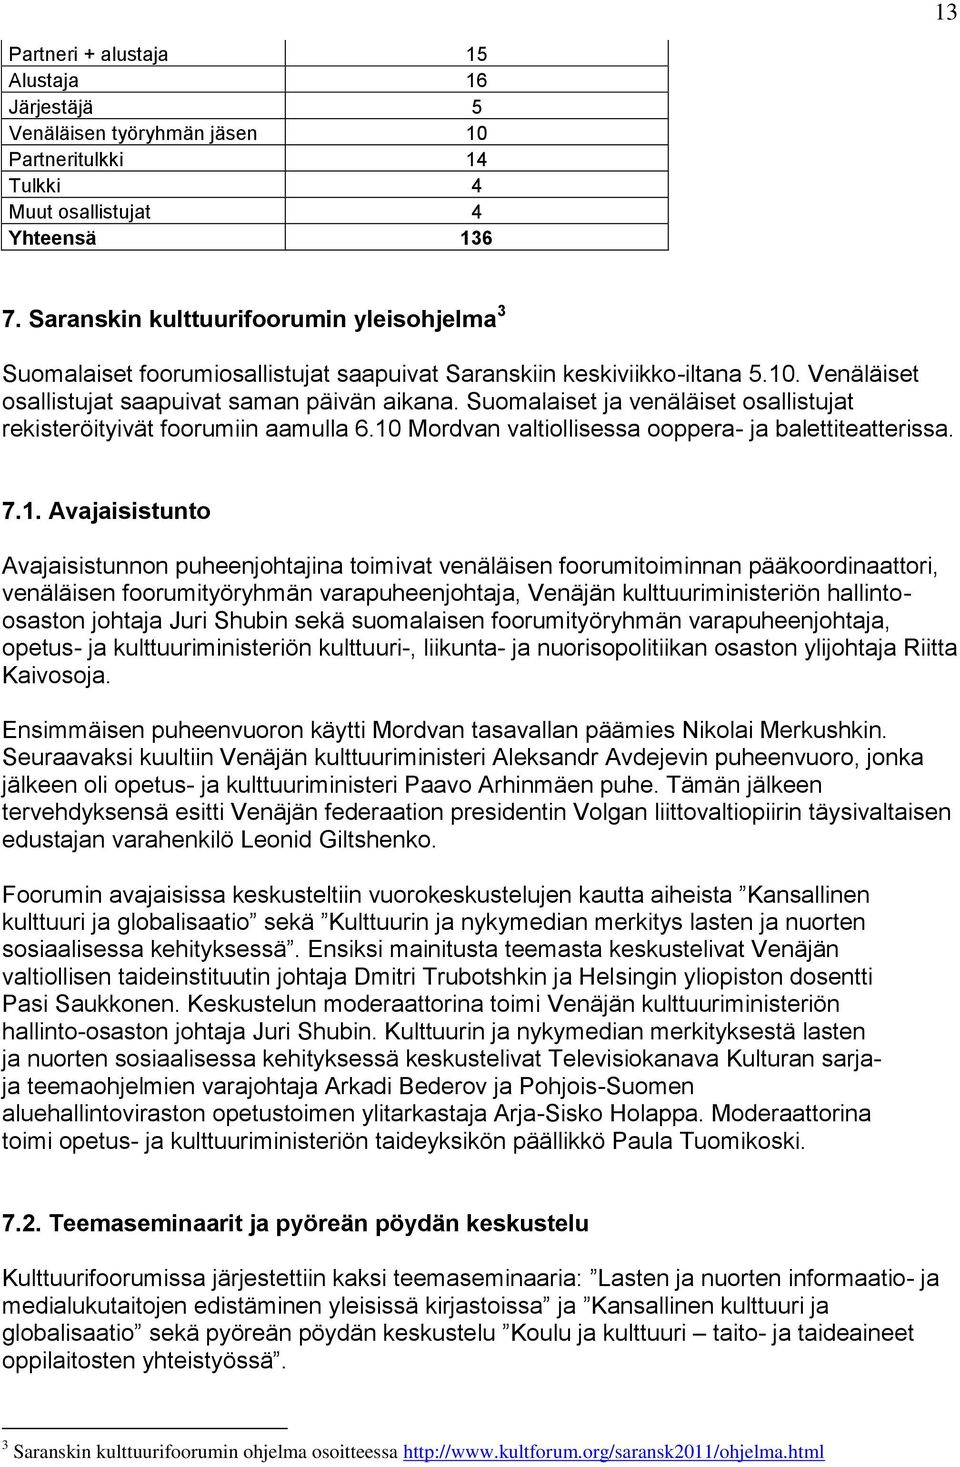 Suomalaiset ja venäläiset osallistujat rekisteröityivät foorumiin aamulla 6.10